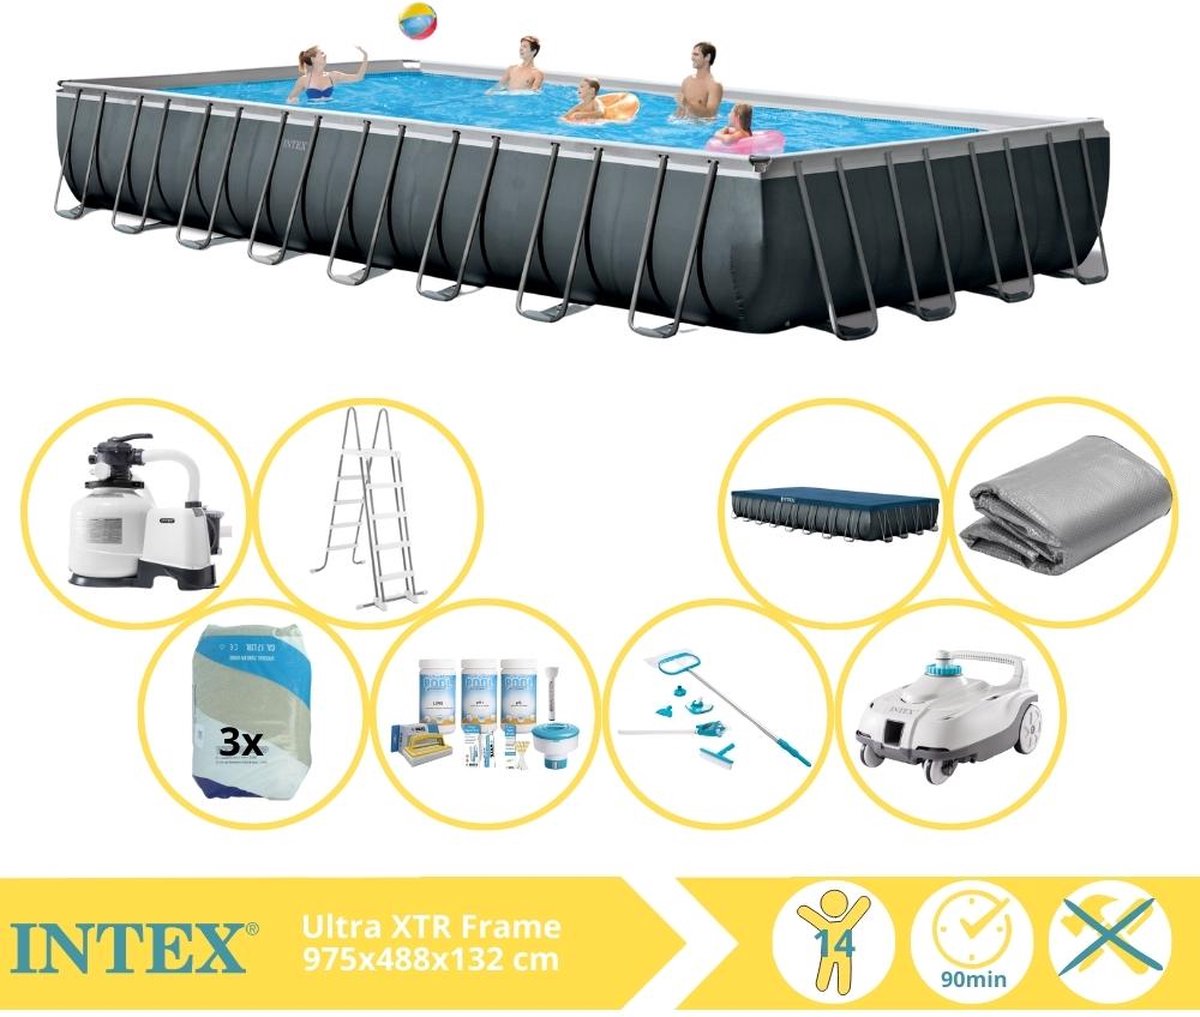 Intex Ultra XTR Frame Zwembad - Opzetzwembad - 975x488x132 cm - Inclusief Onderhoudspakket, Filterzand, Onderhoudsset en Zwembad Stofzuiger